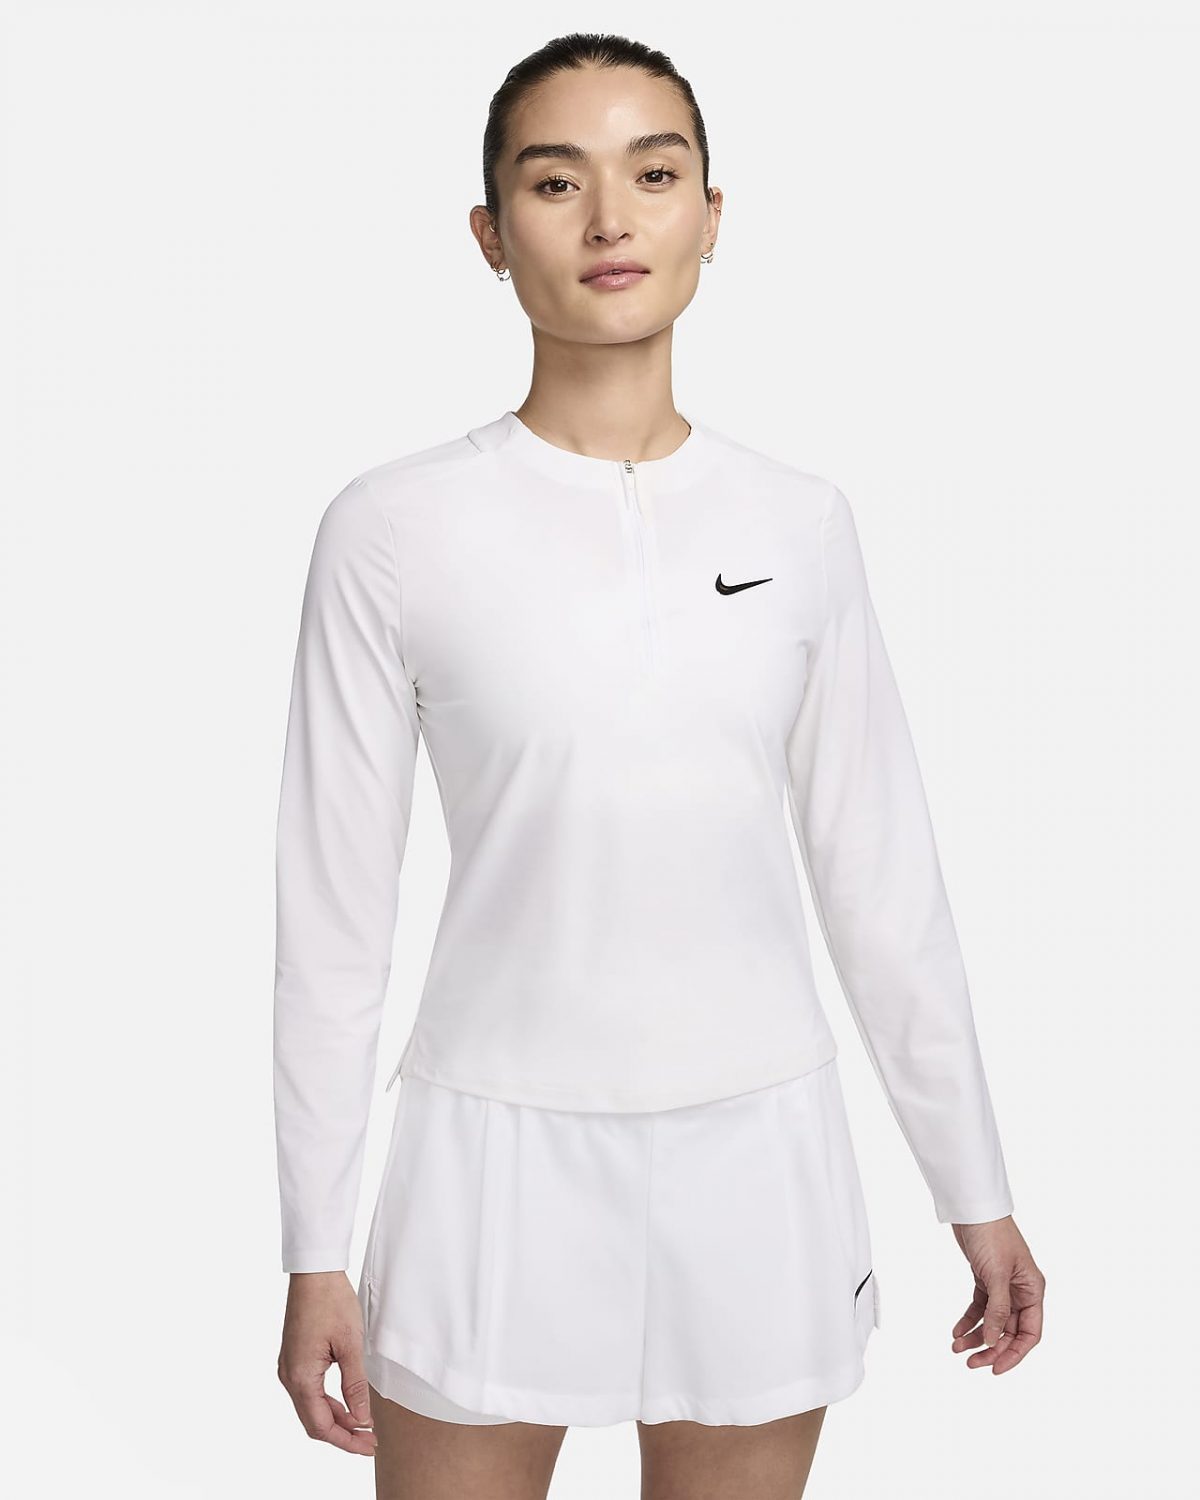 Женская спортивная одежда NikeCourt Advantage фото